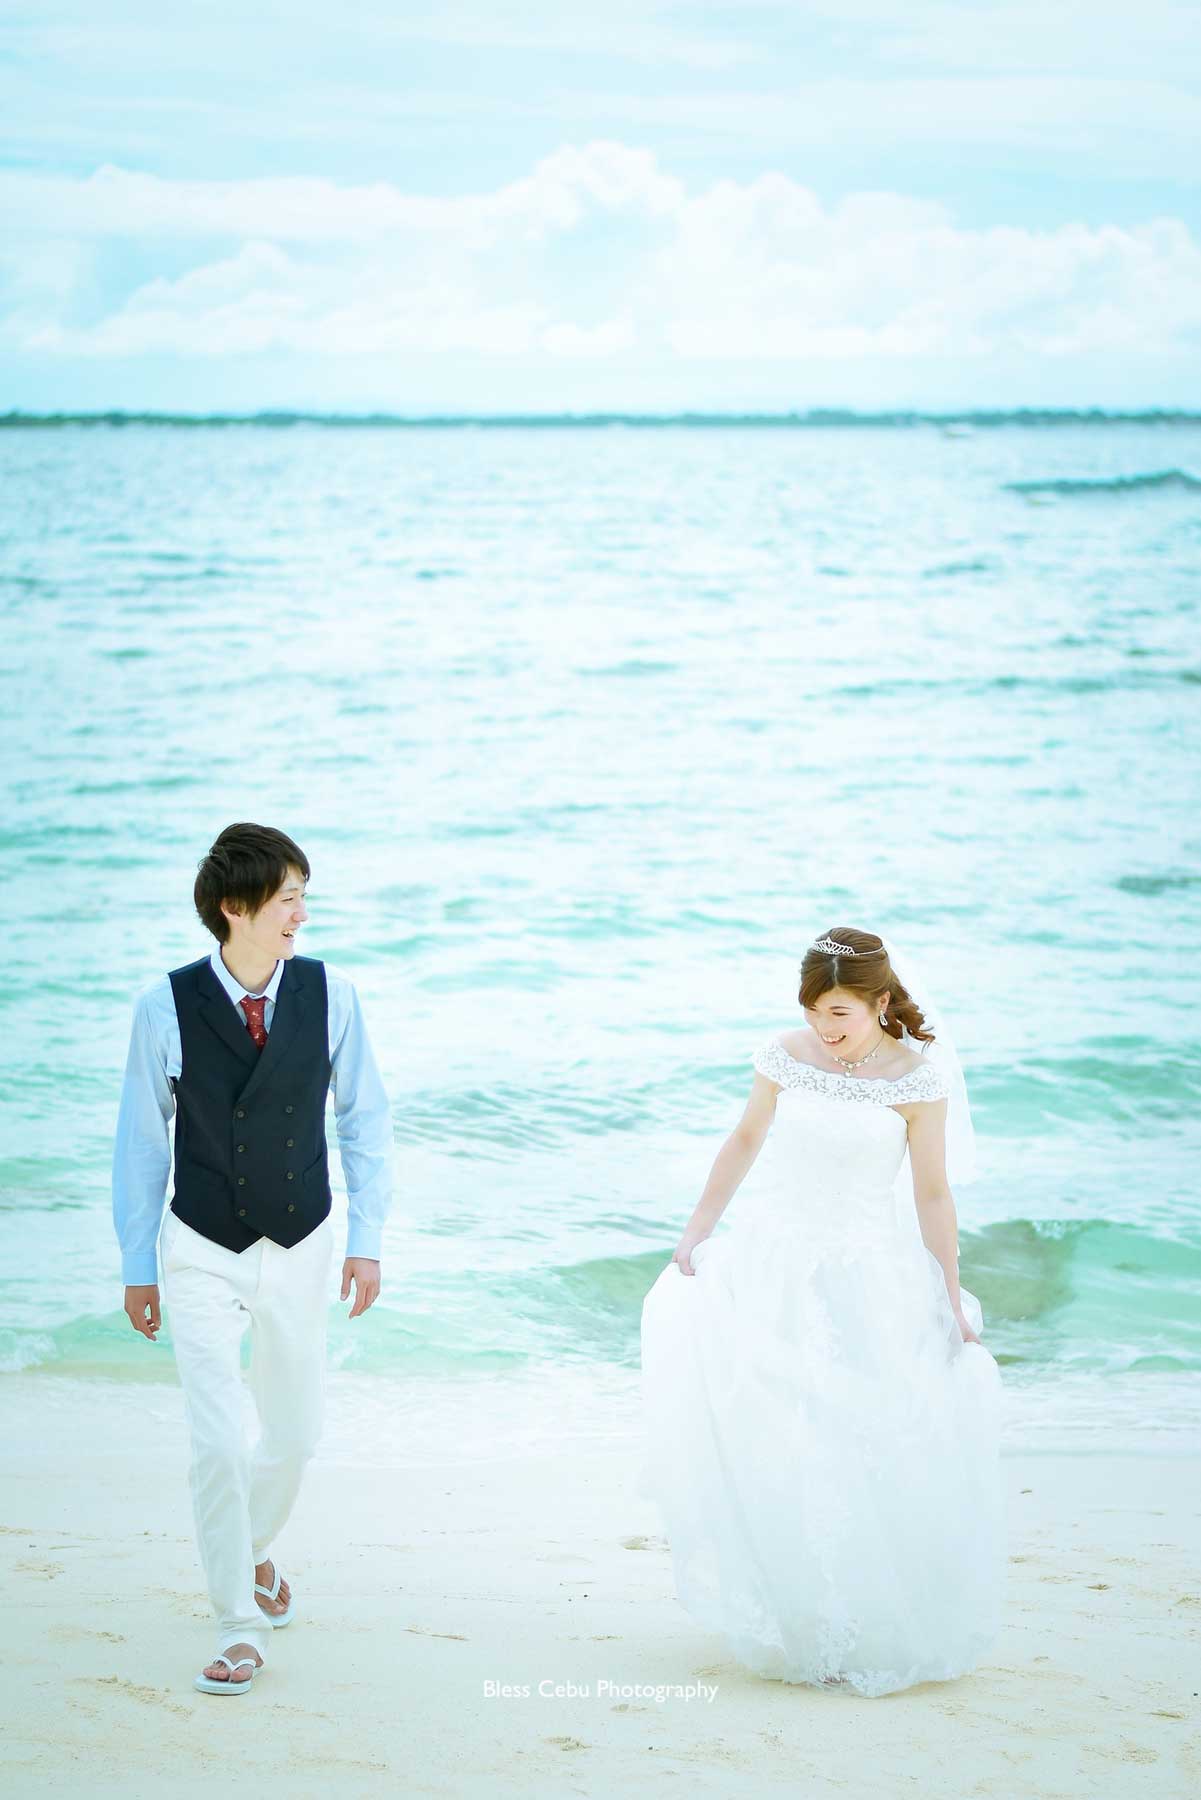 ドレスの裾を持って浜辺を歩く花嫁様